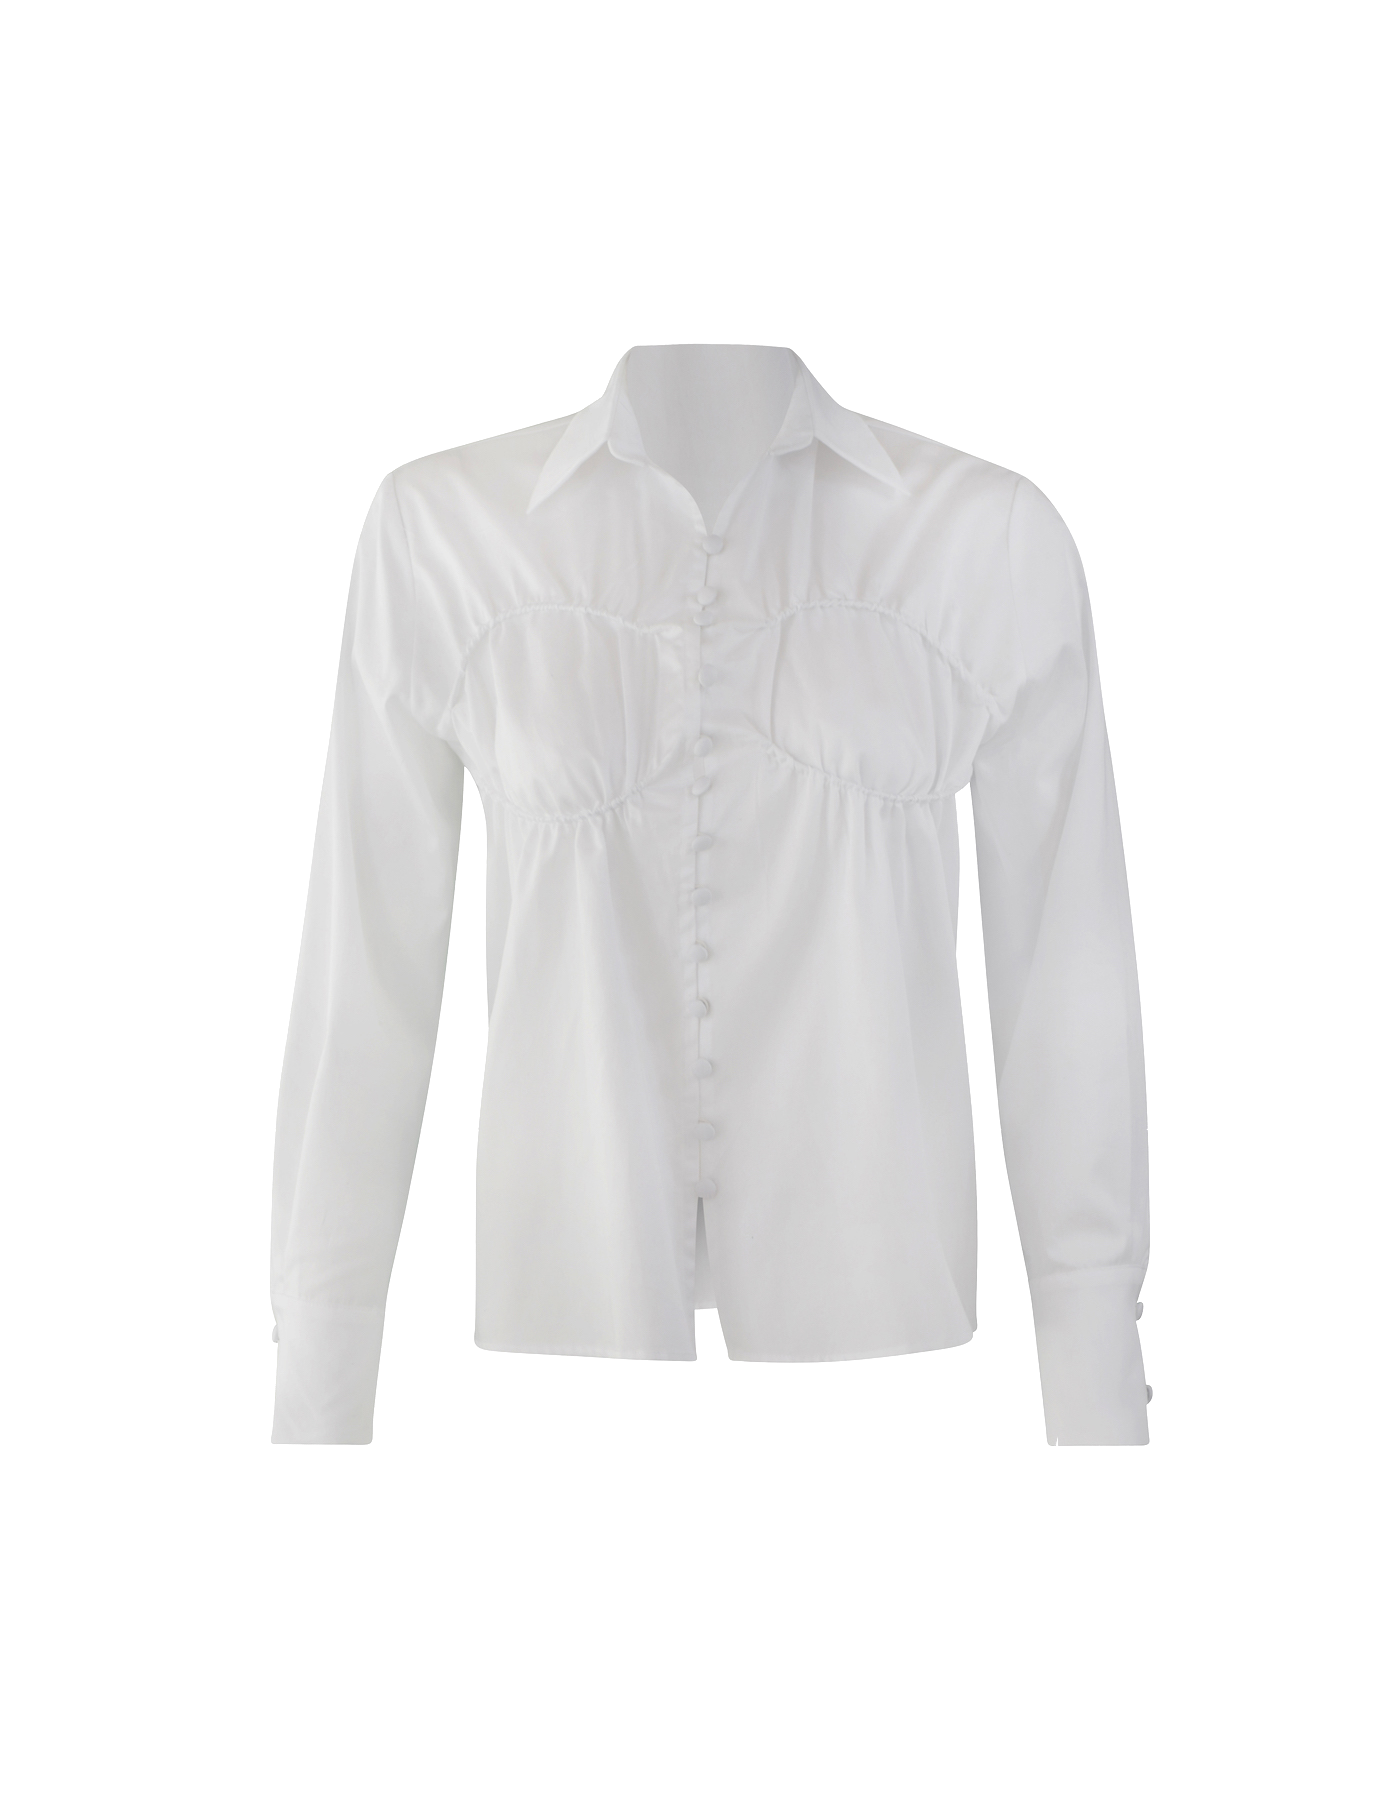 Maet Alaya White Shirt In Metallic